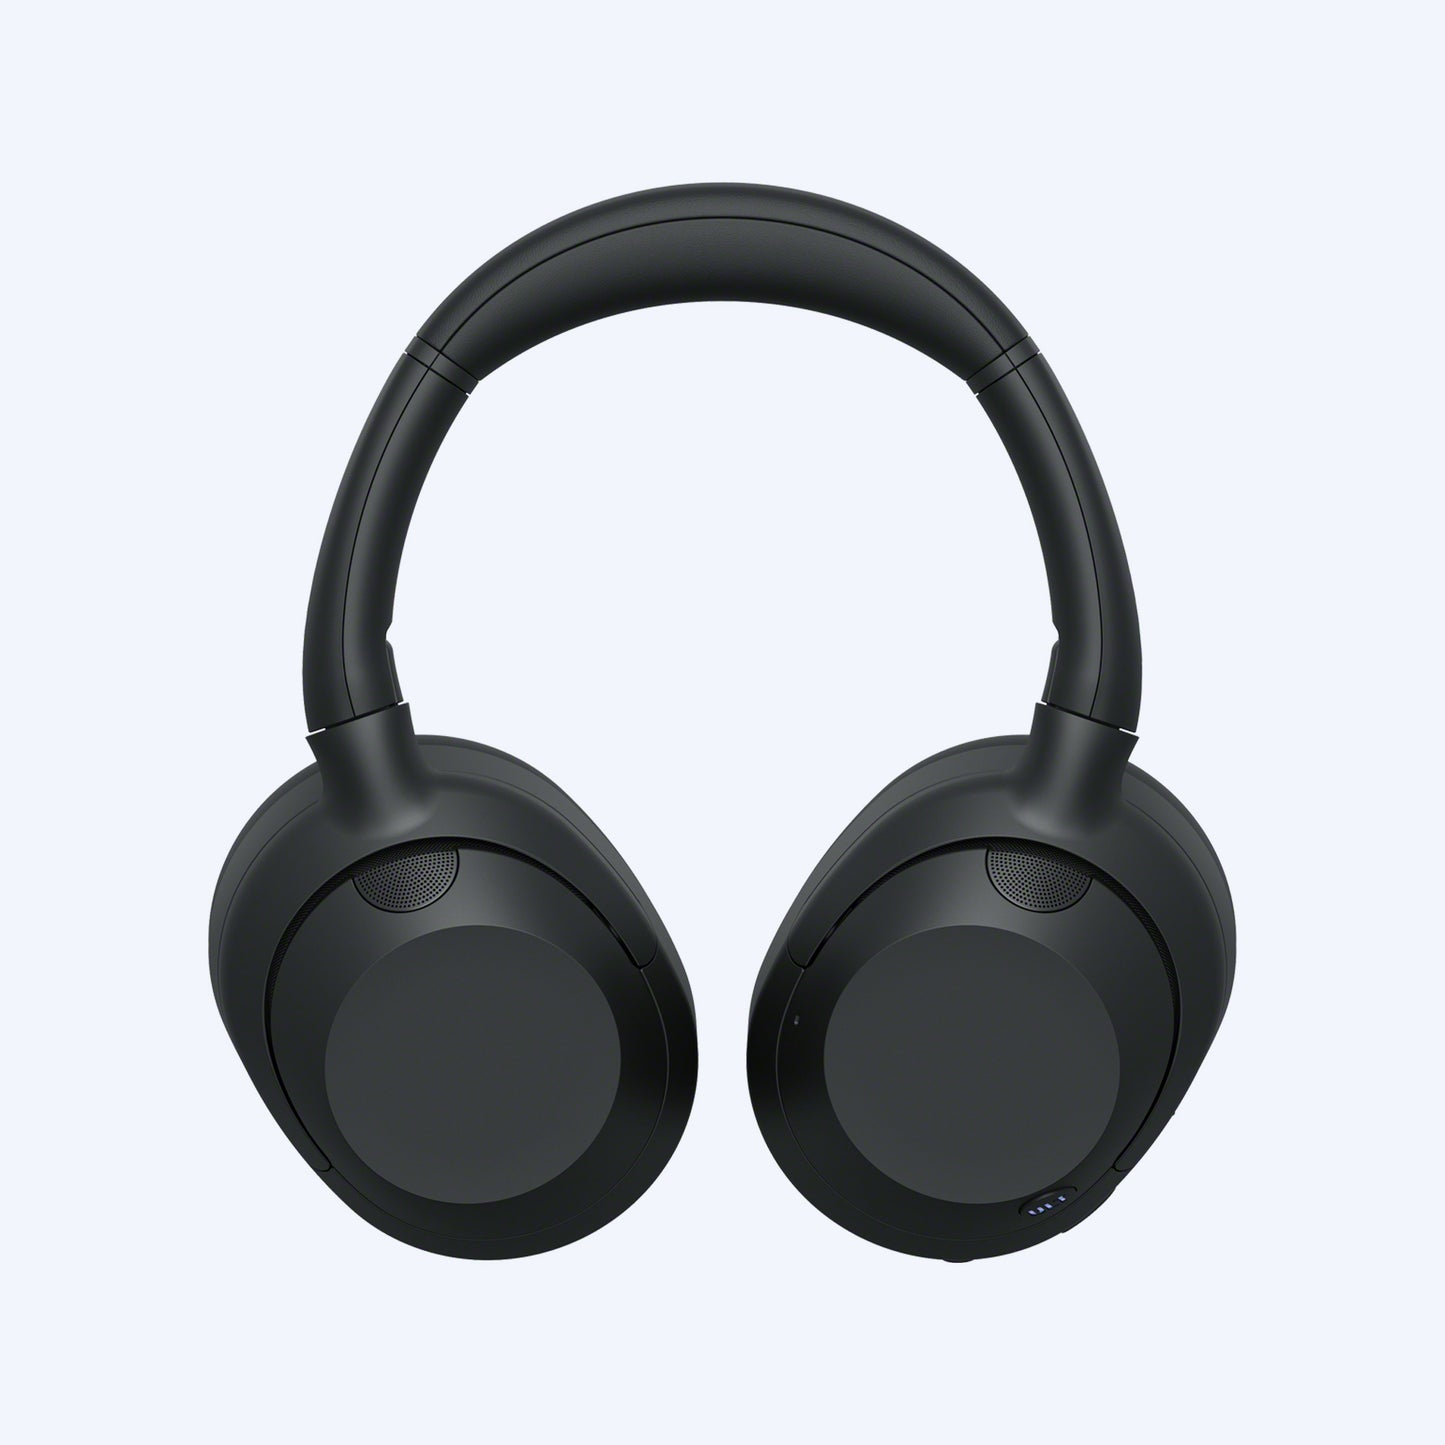 Sony ULT WEAR Wireless Noise Canceling Headphones